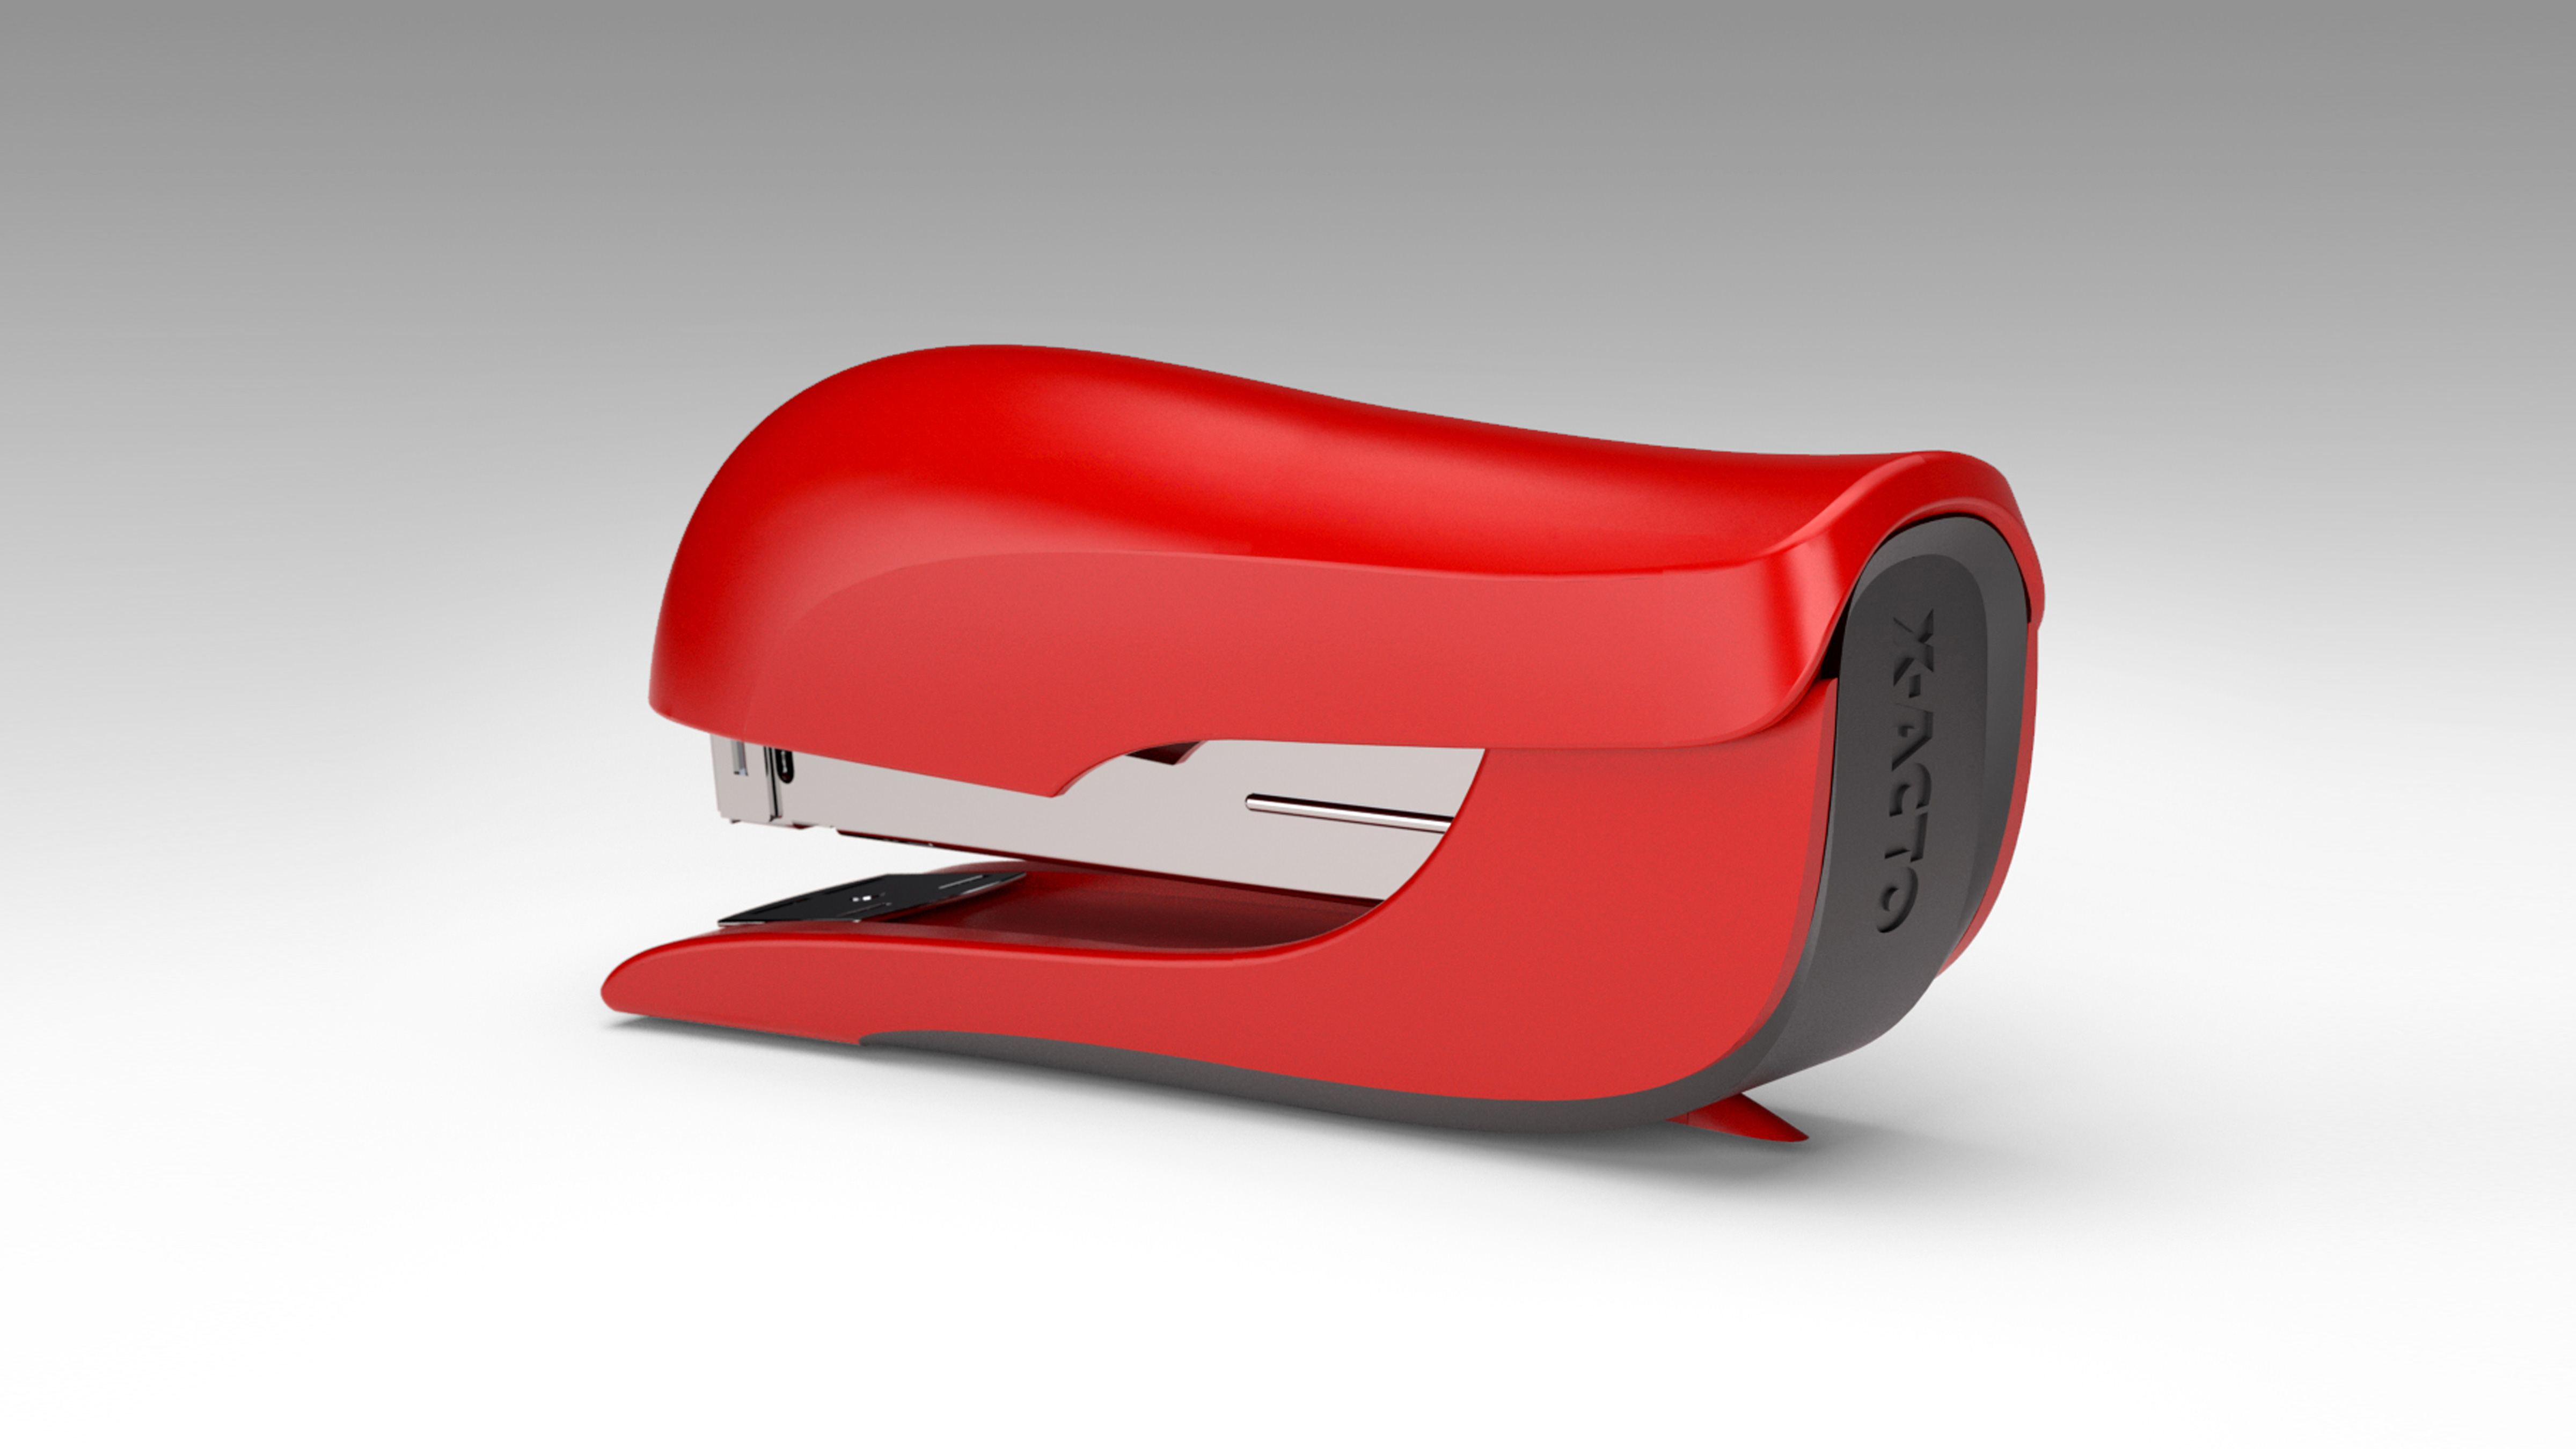 x acto stapler consumer product design 28